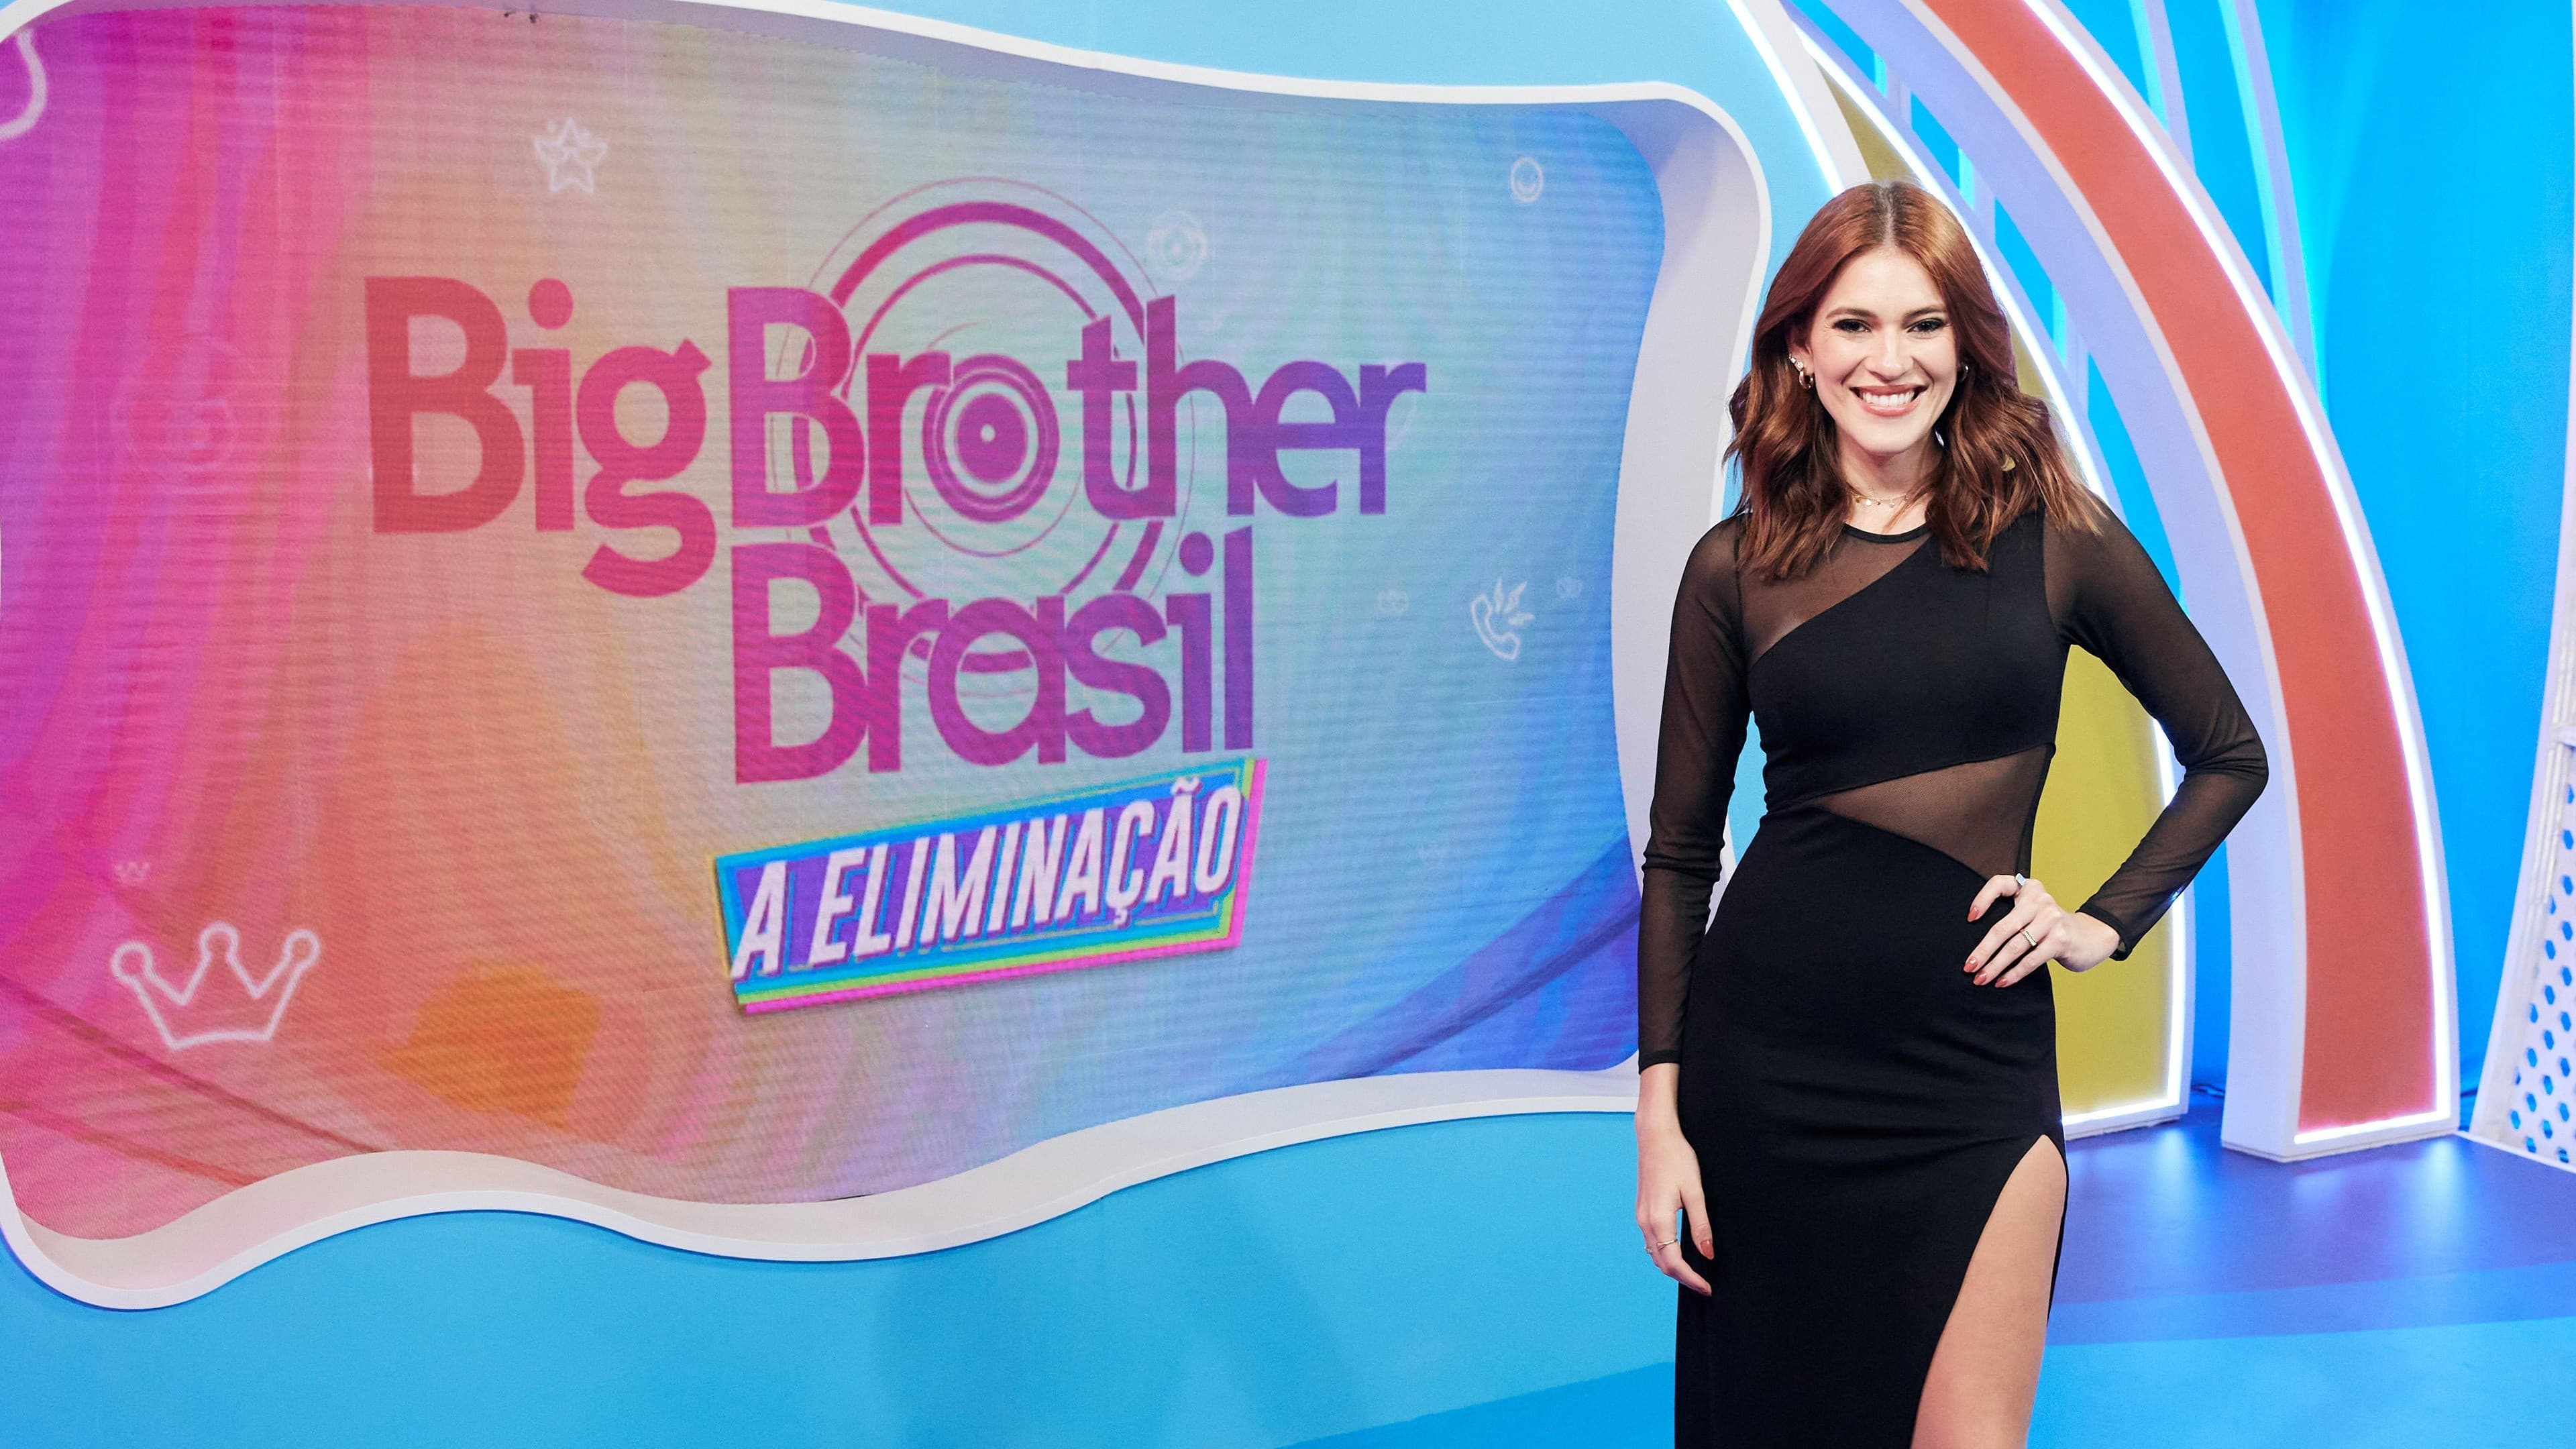 Big Brother Brasil: A Eliminação